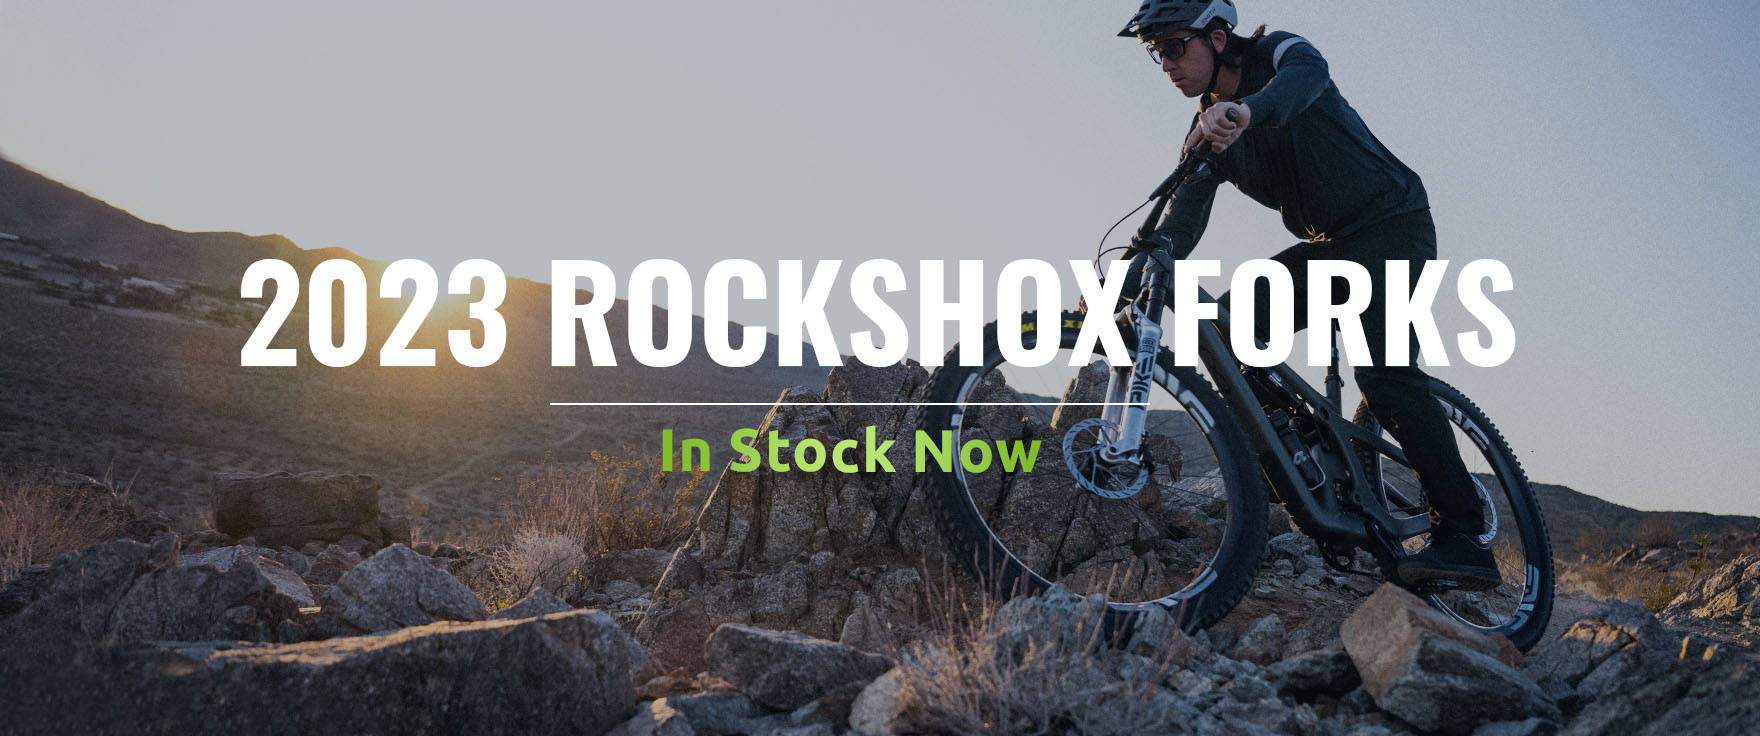 2023 Rockshox Forks